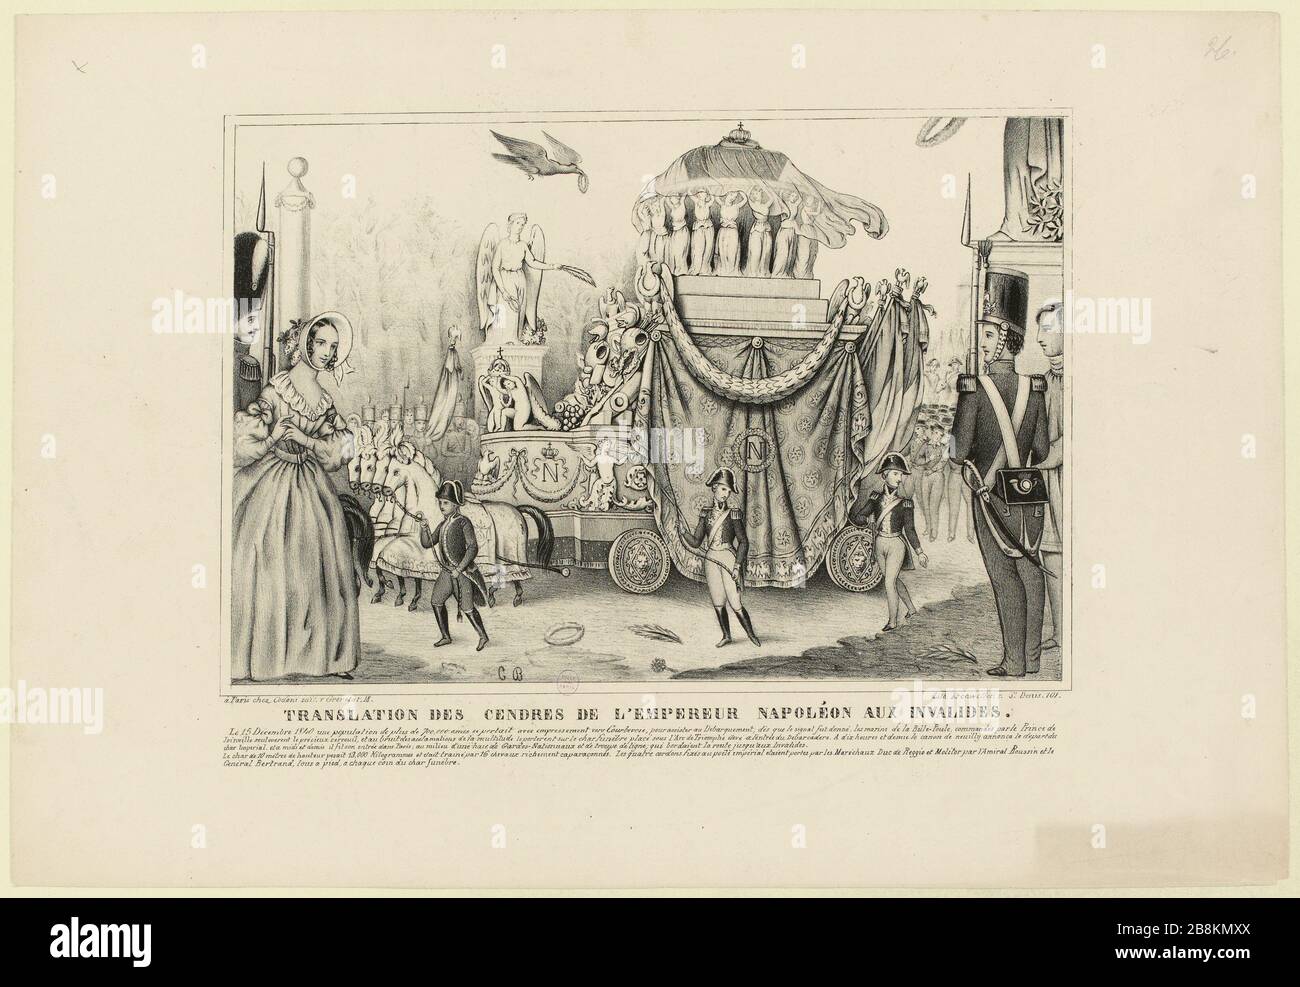 Traduzione delle ceneri dell'imperatore Napoleone agli Invalides (IT) Foto Stock